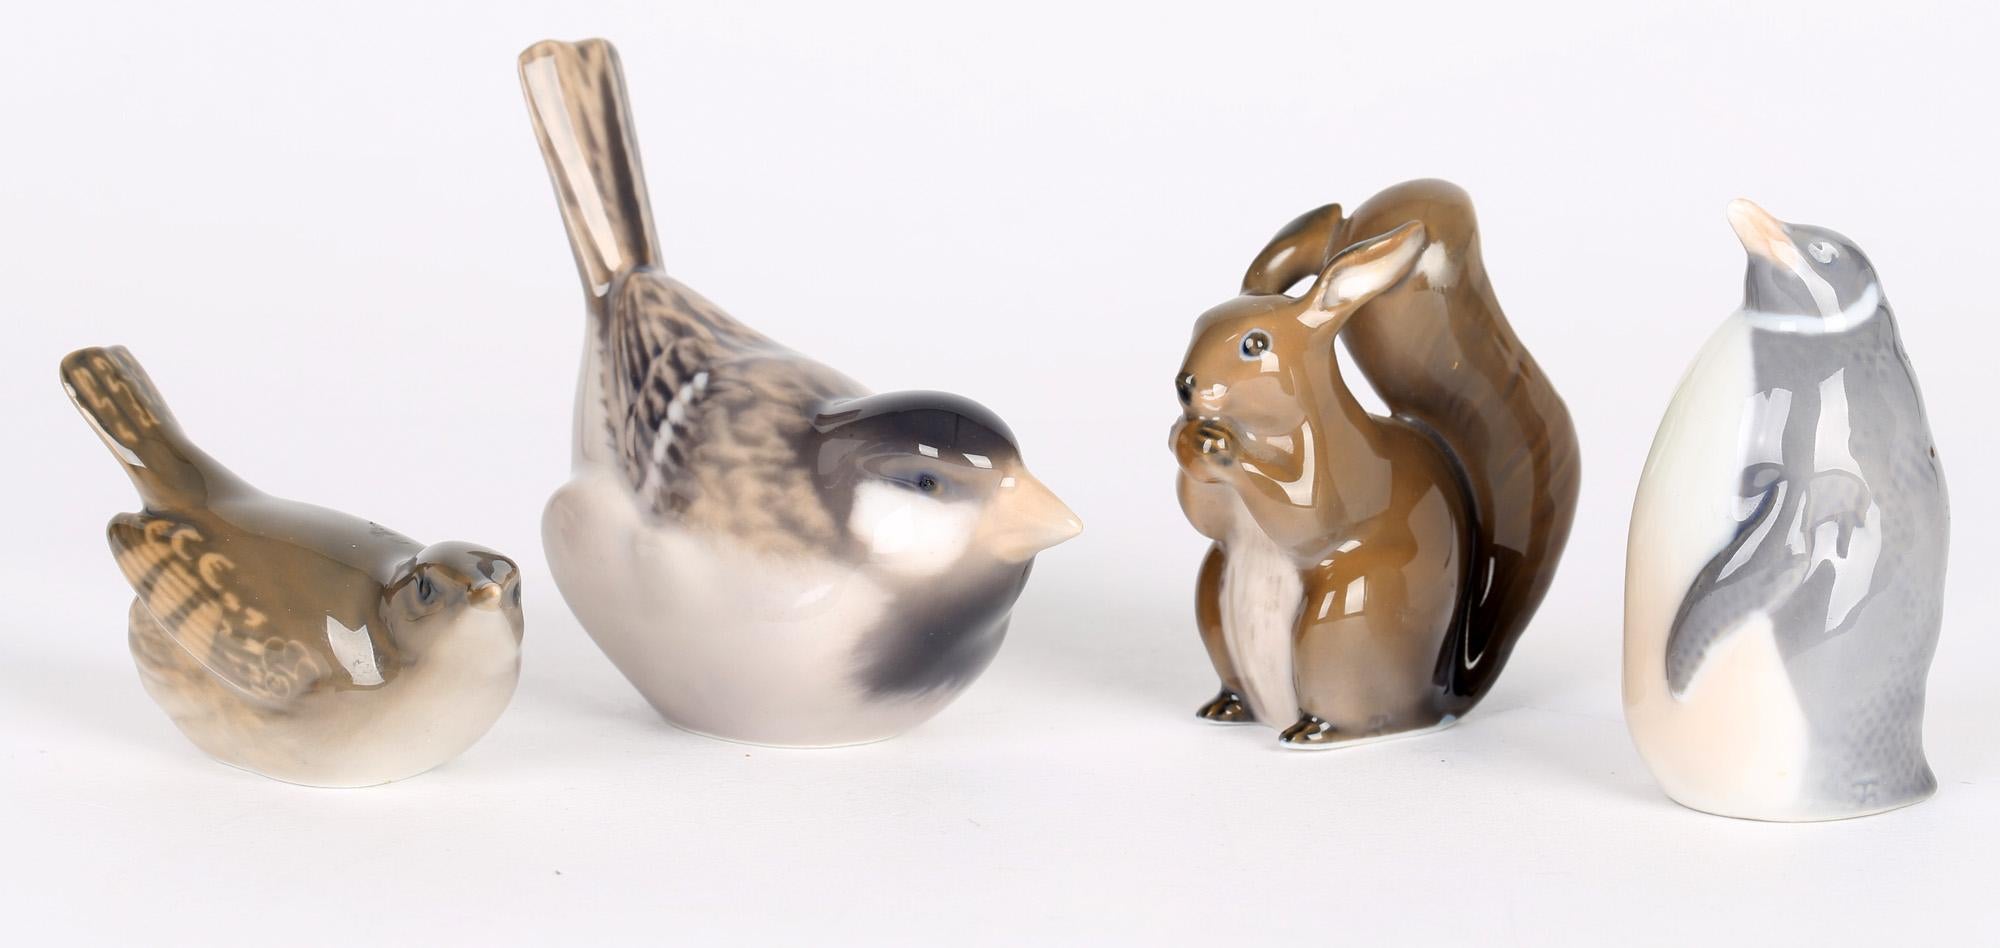 Quatre oiseaux et écureuils en porcelaine danoise fabriqués par Royal Copenhagen et datant des années 1960. Les figures sont bien modelées et peintes à la main dans des tons de bleu, de brun et de rouge sur un fond blanc. Elles comprennent un grand